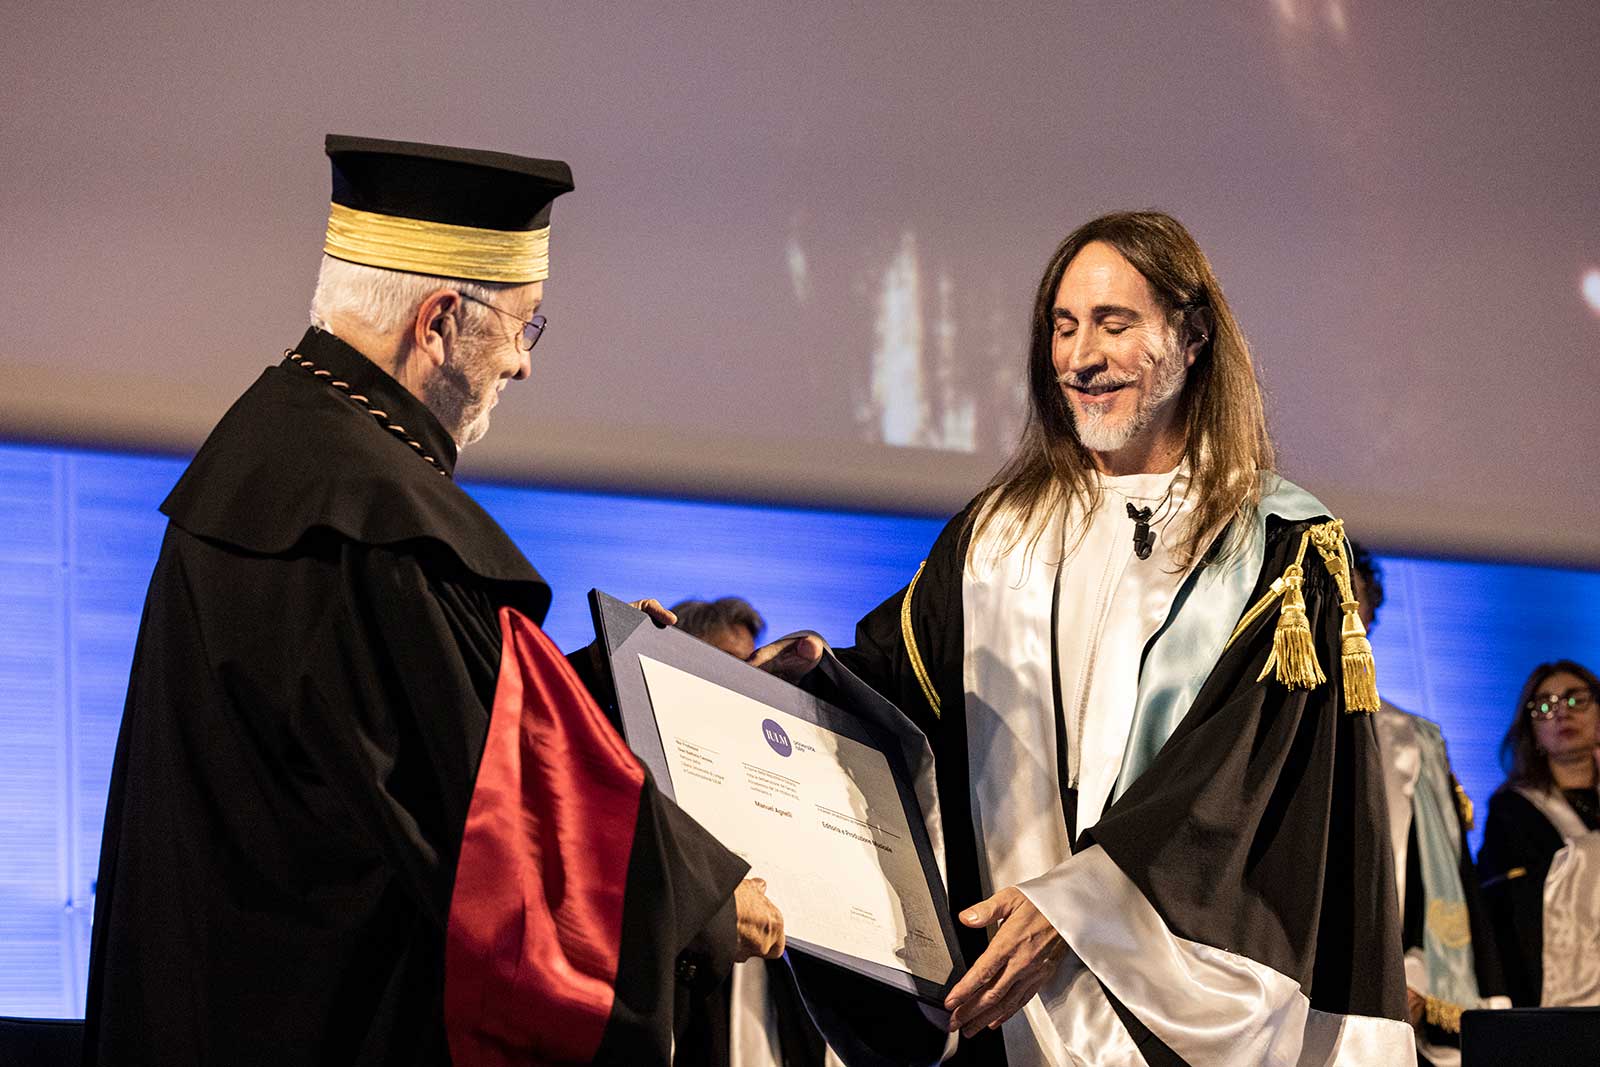 Il Rettore Gianni Canova consegna il Diploma ad Honorem